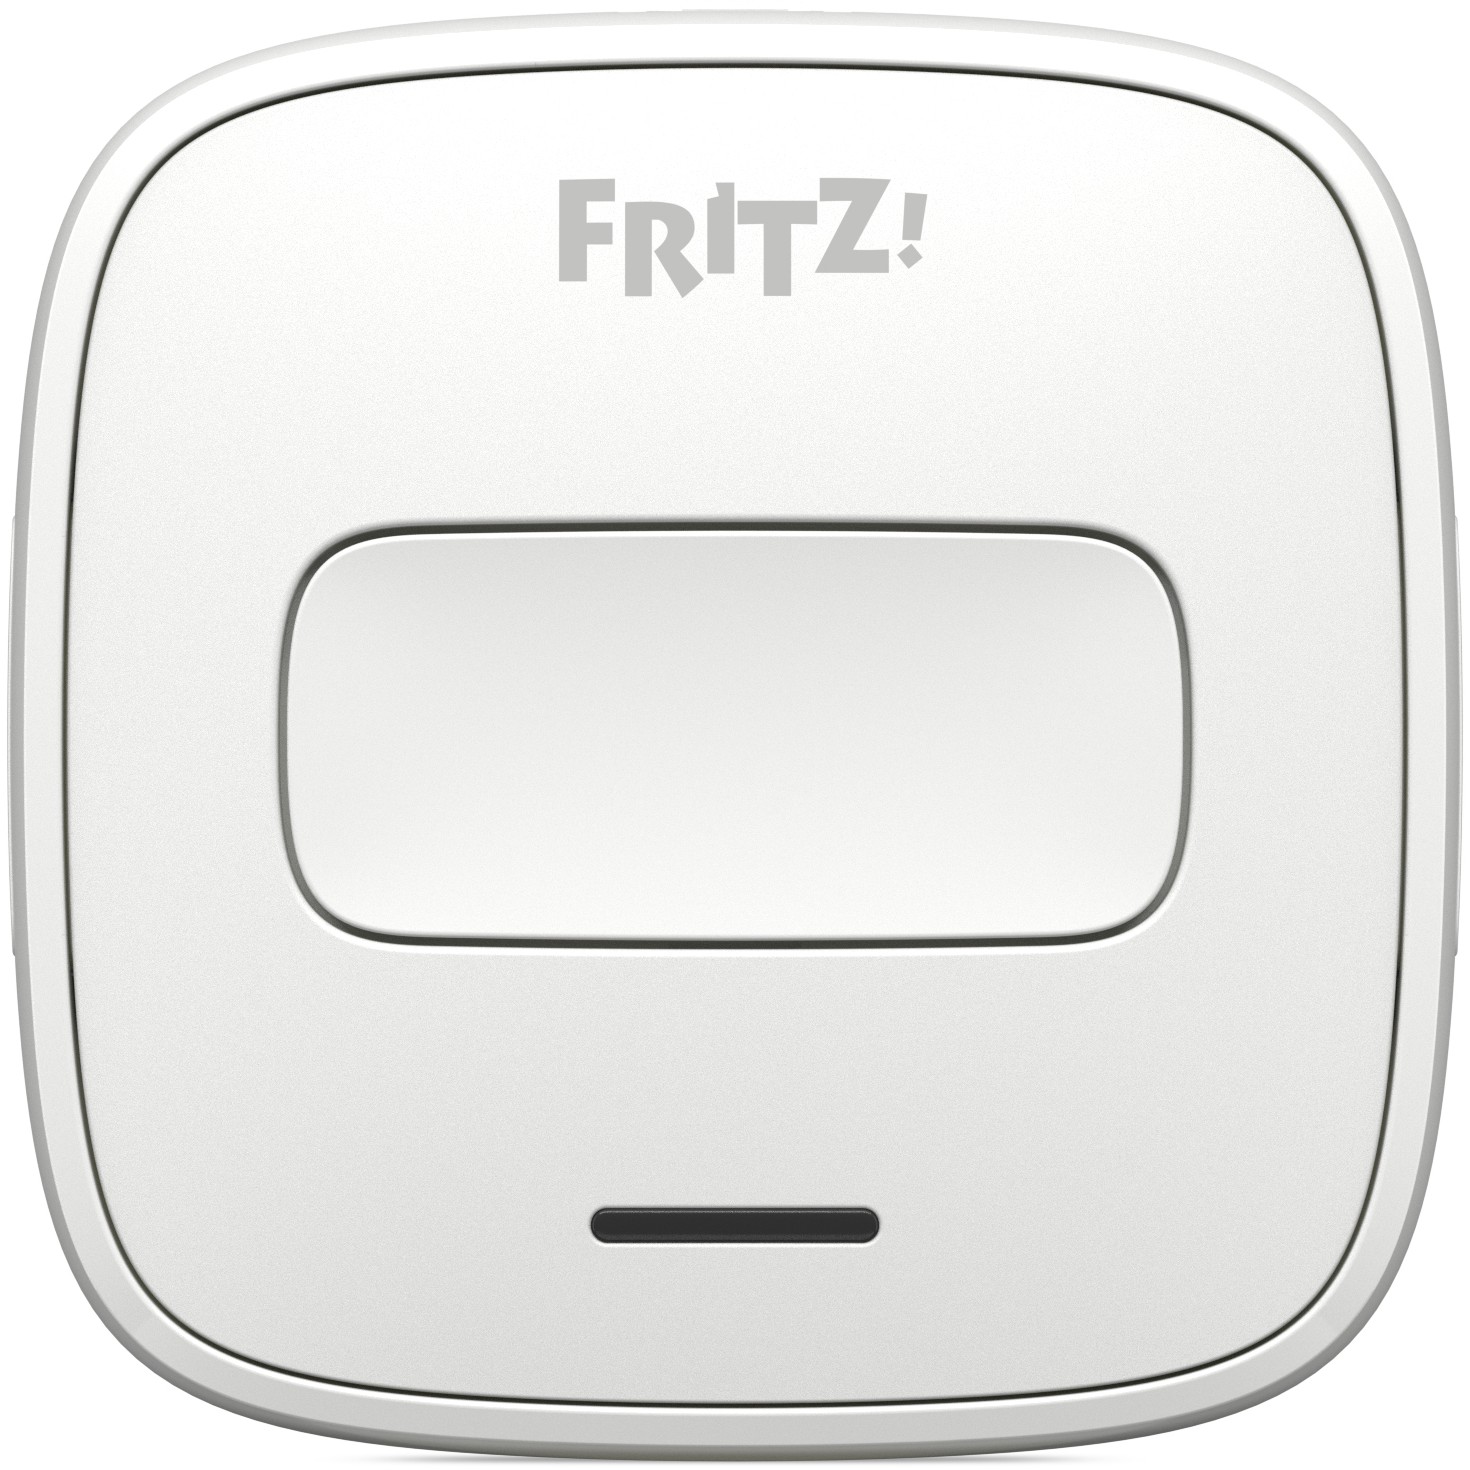 HOME Taster AVM FRITZ!DECT 400 komfortabler Taster für die Smart-Home Steuerung